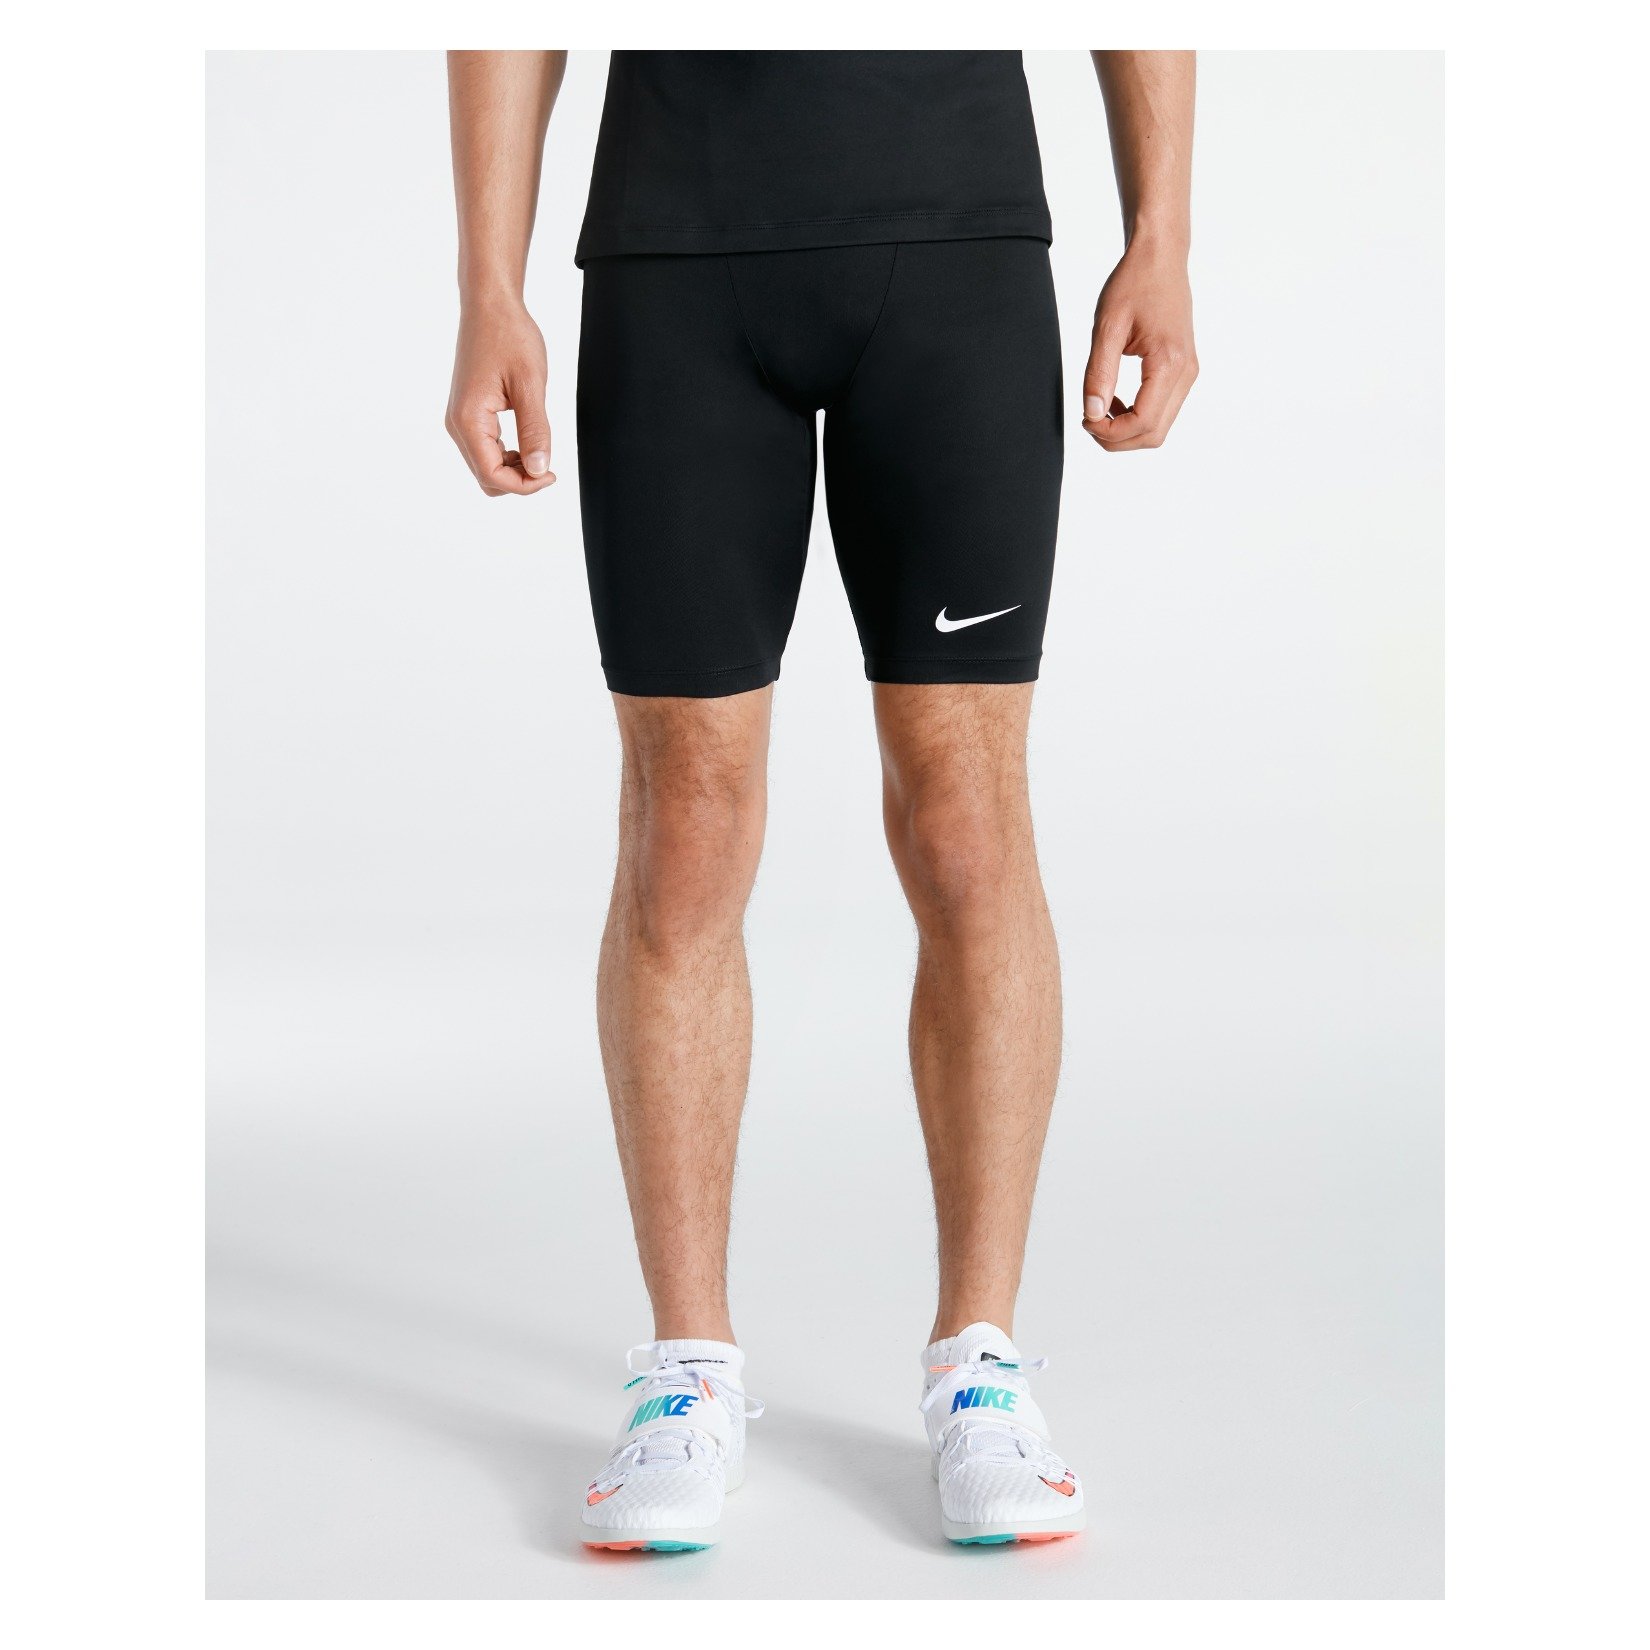 Nike Half Tight Running Shorts - Kitlocker.com